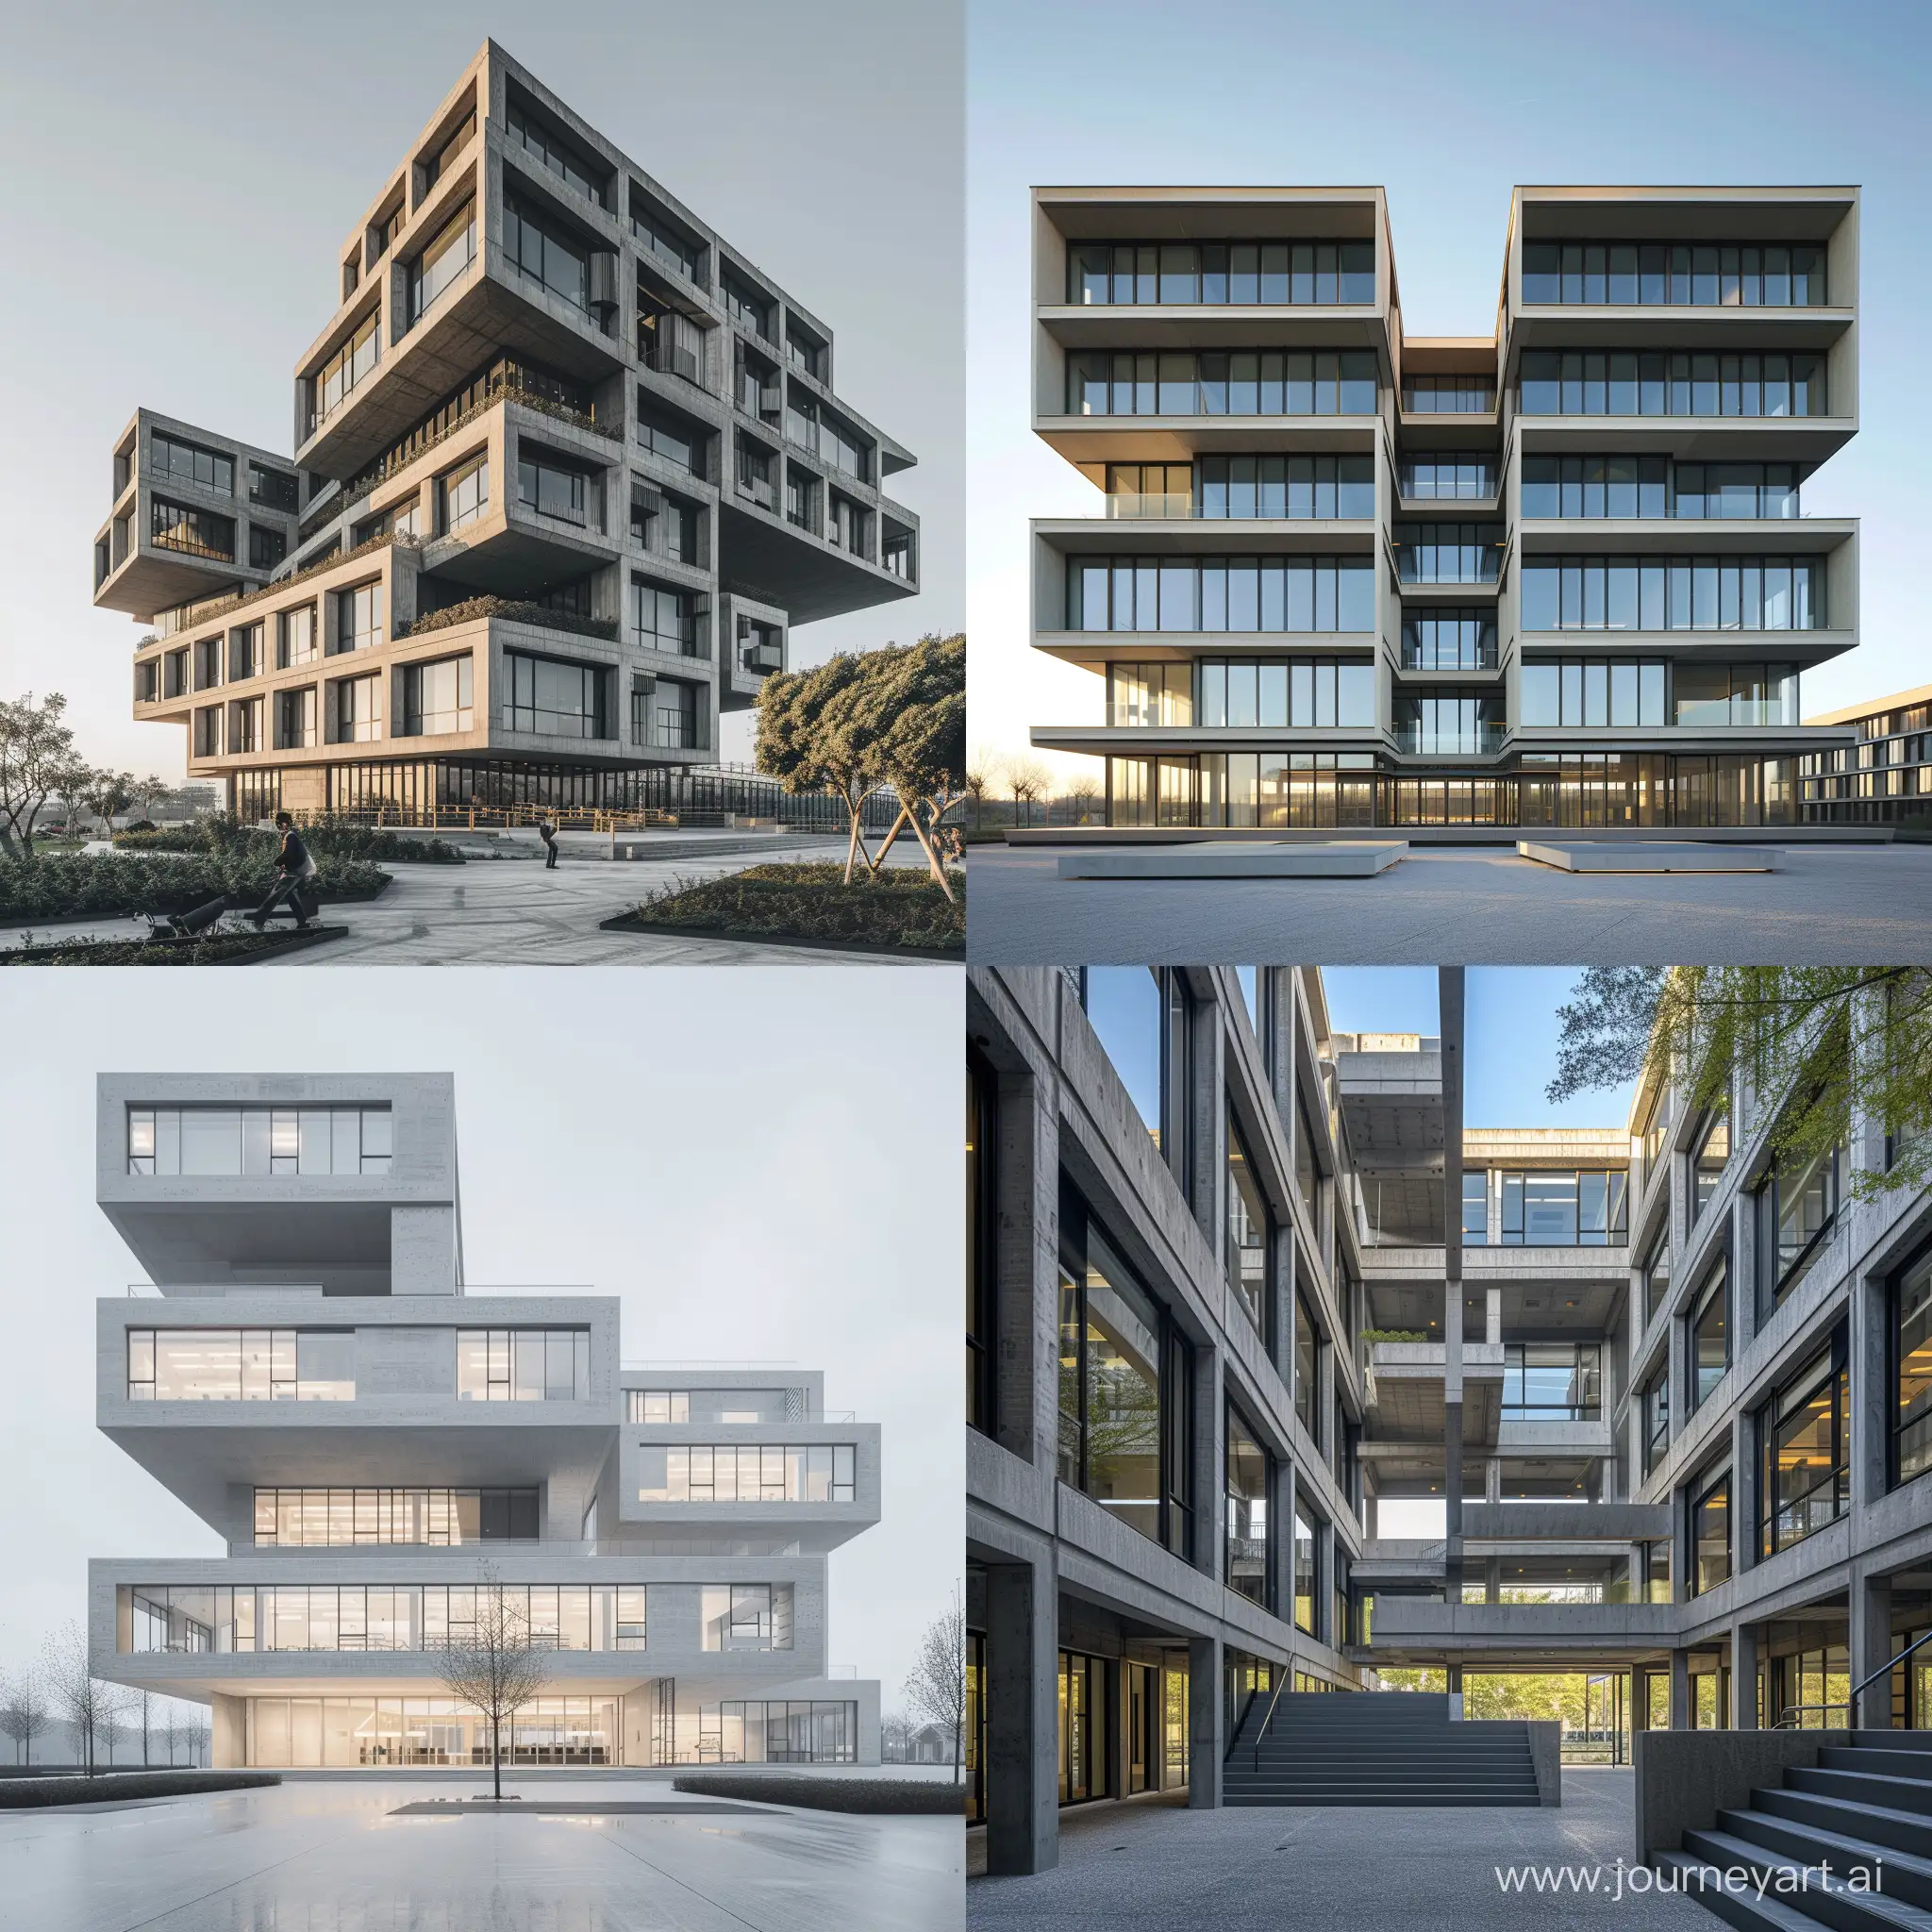 Architectural-Marvel-8Floor-Building-Contest-Captured-in-Iwan-Baans-8K-Masterpiece